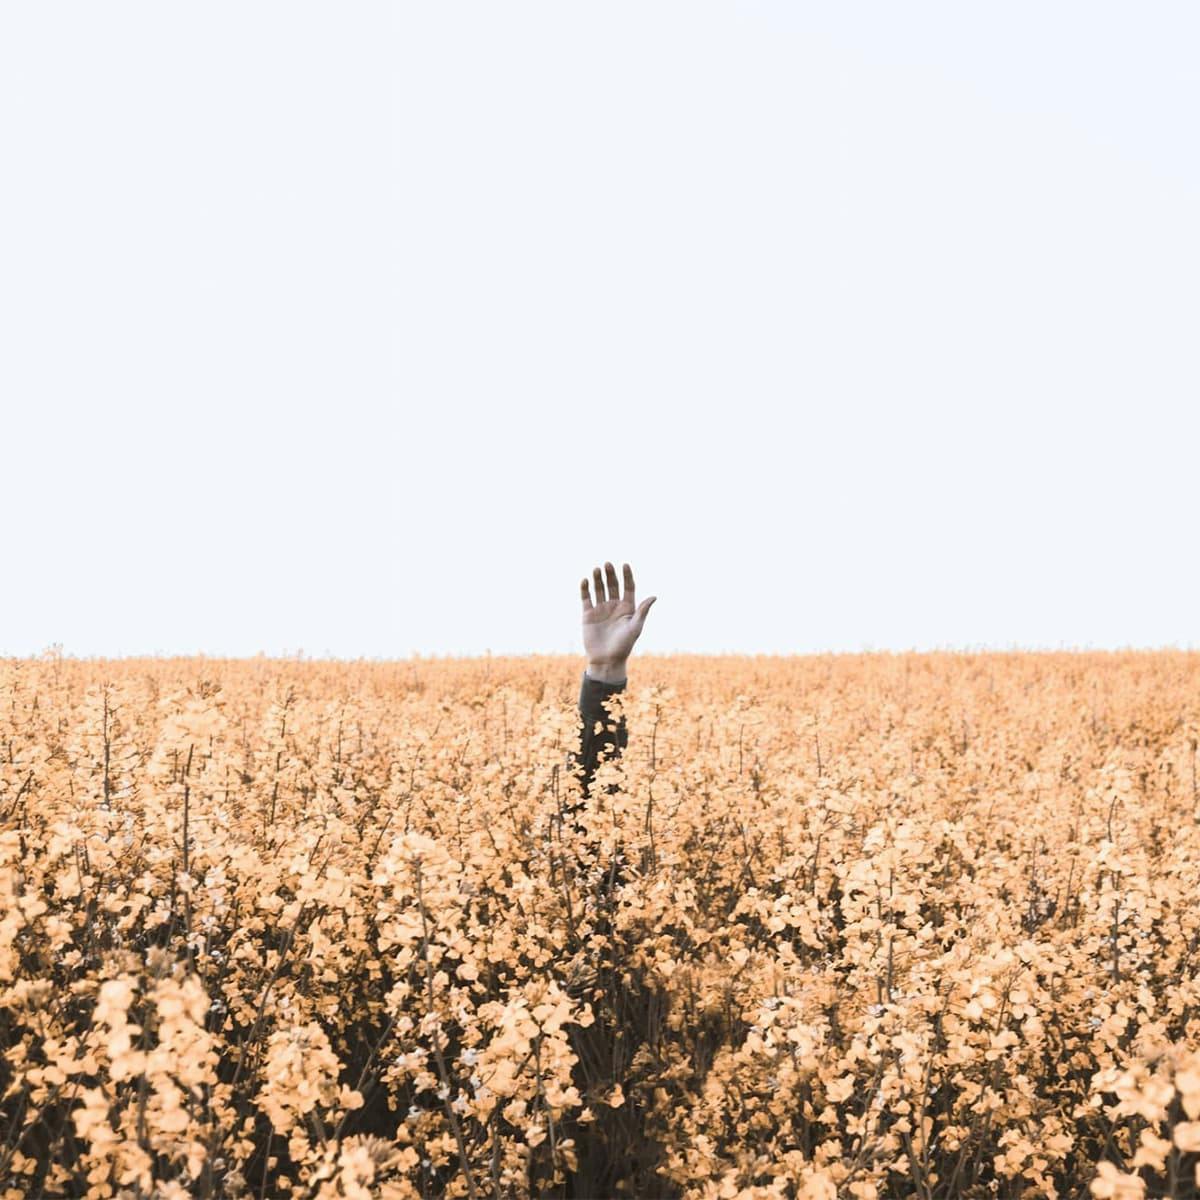 Ein hochgestreckter Arm in einem Getreidefeld. Der Mensch, dem der Arm gehört ist nicht sichtbar.